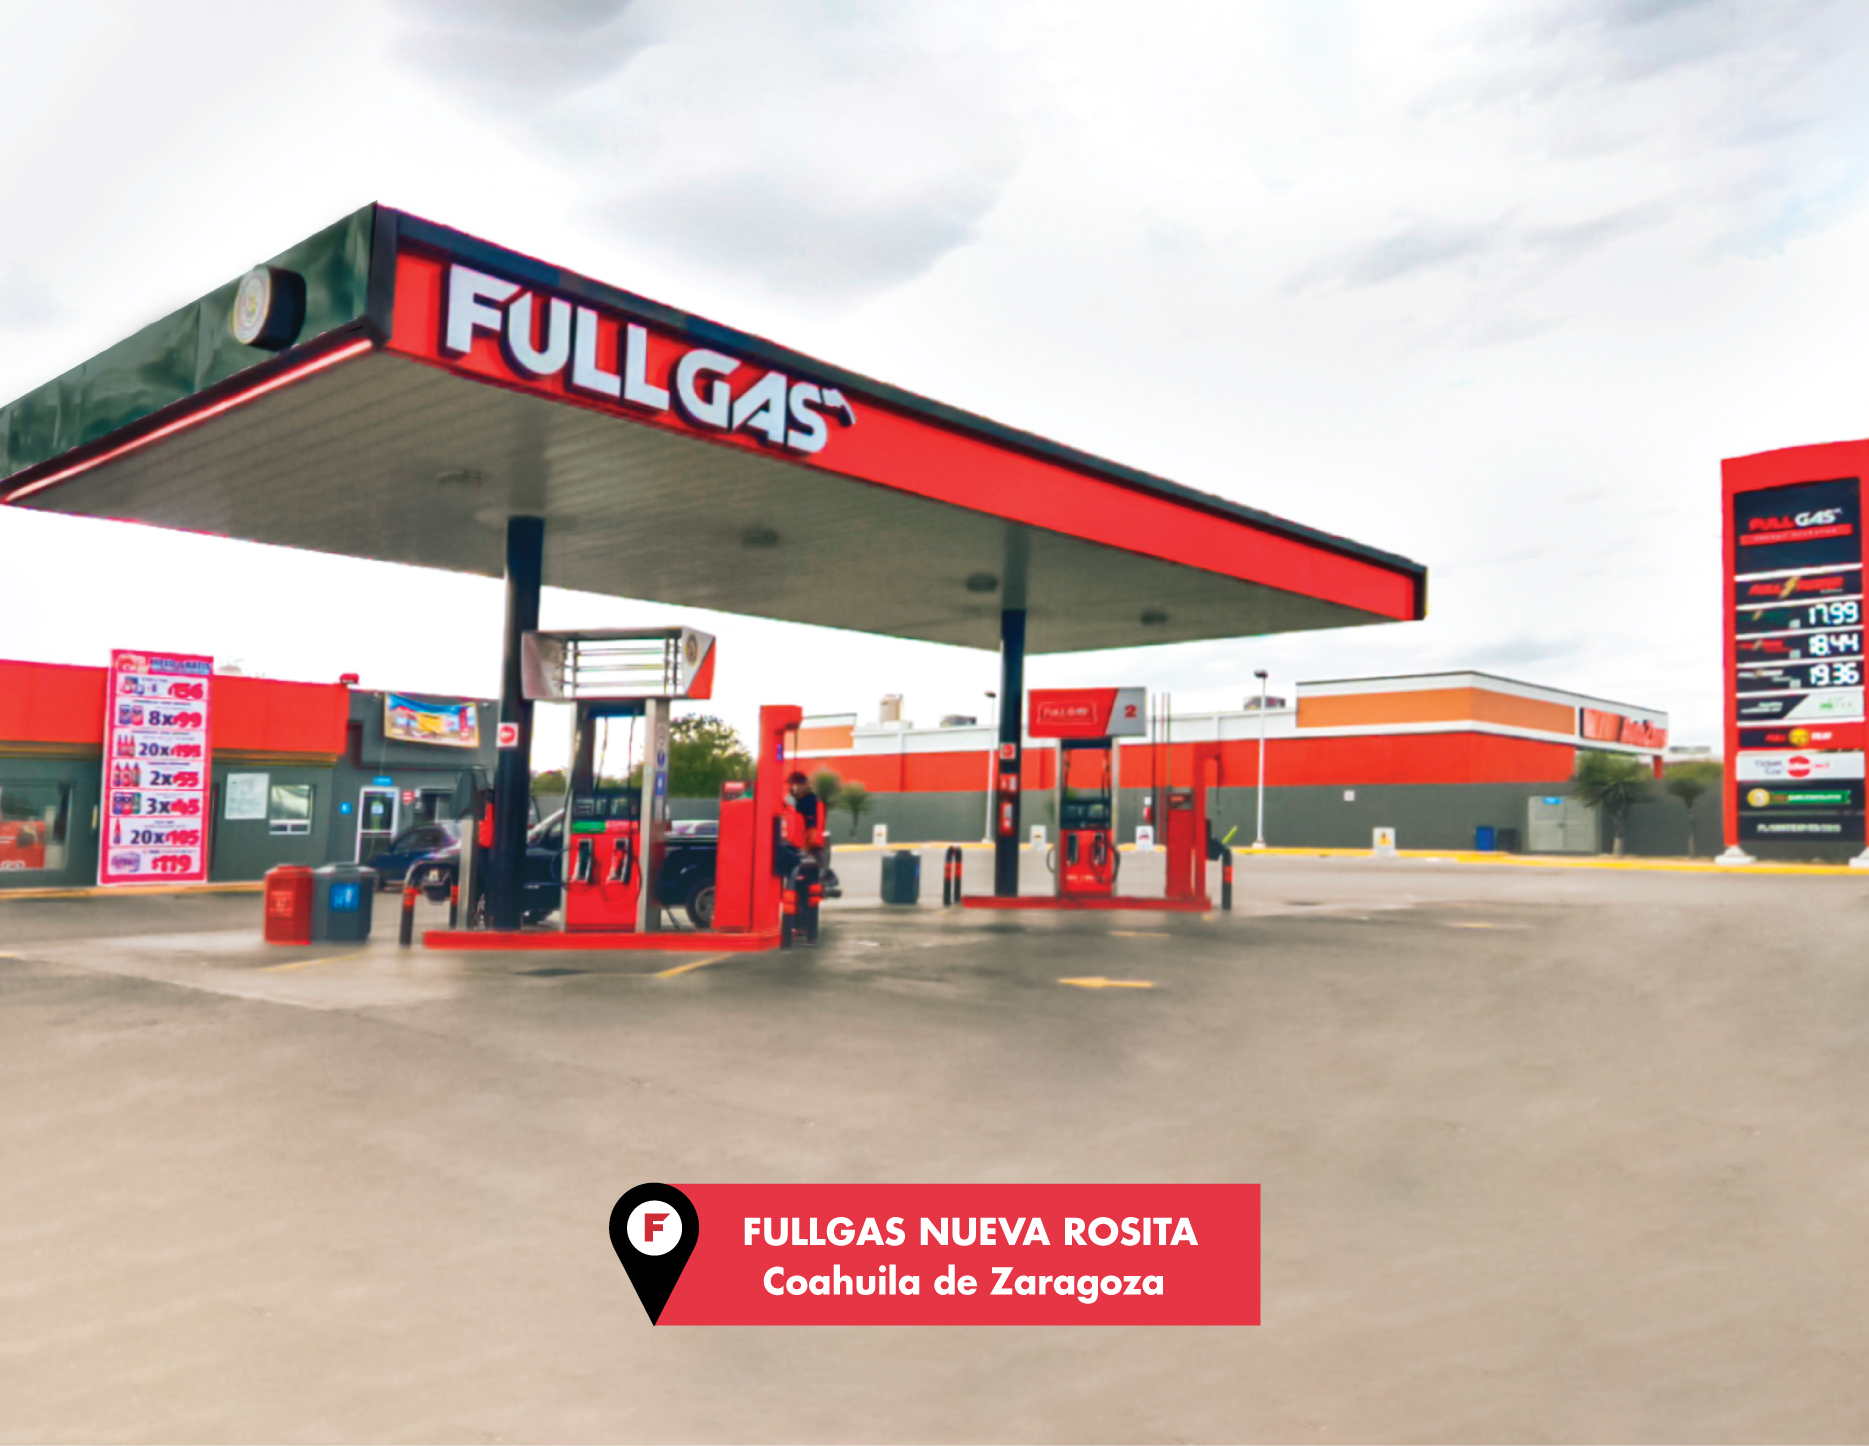 FullGas on X: Llena tu tanque en nuestras gasolineras #FullGas y conoce  los beneficios de nuestro aditivo #FullPower.​ ⛽⚡️​ ​ #SiempreAlFull  #DespachandoBuenTrato #VamosContigo #gasolina #gasolinera #fullgas   / X